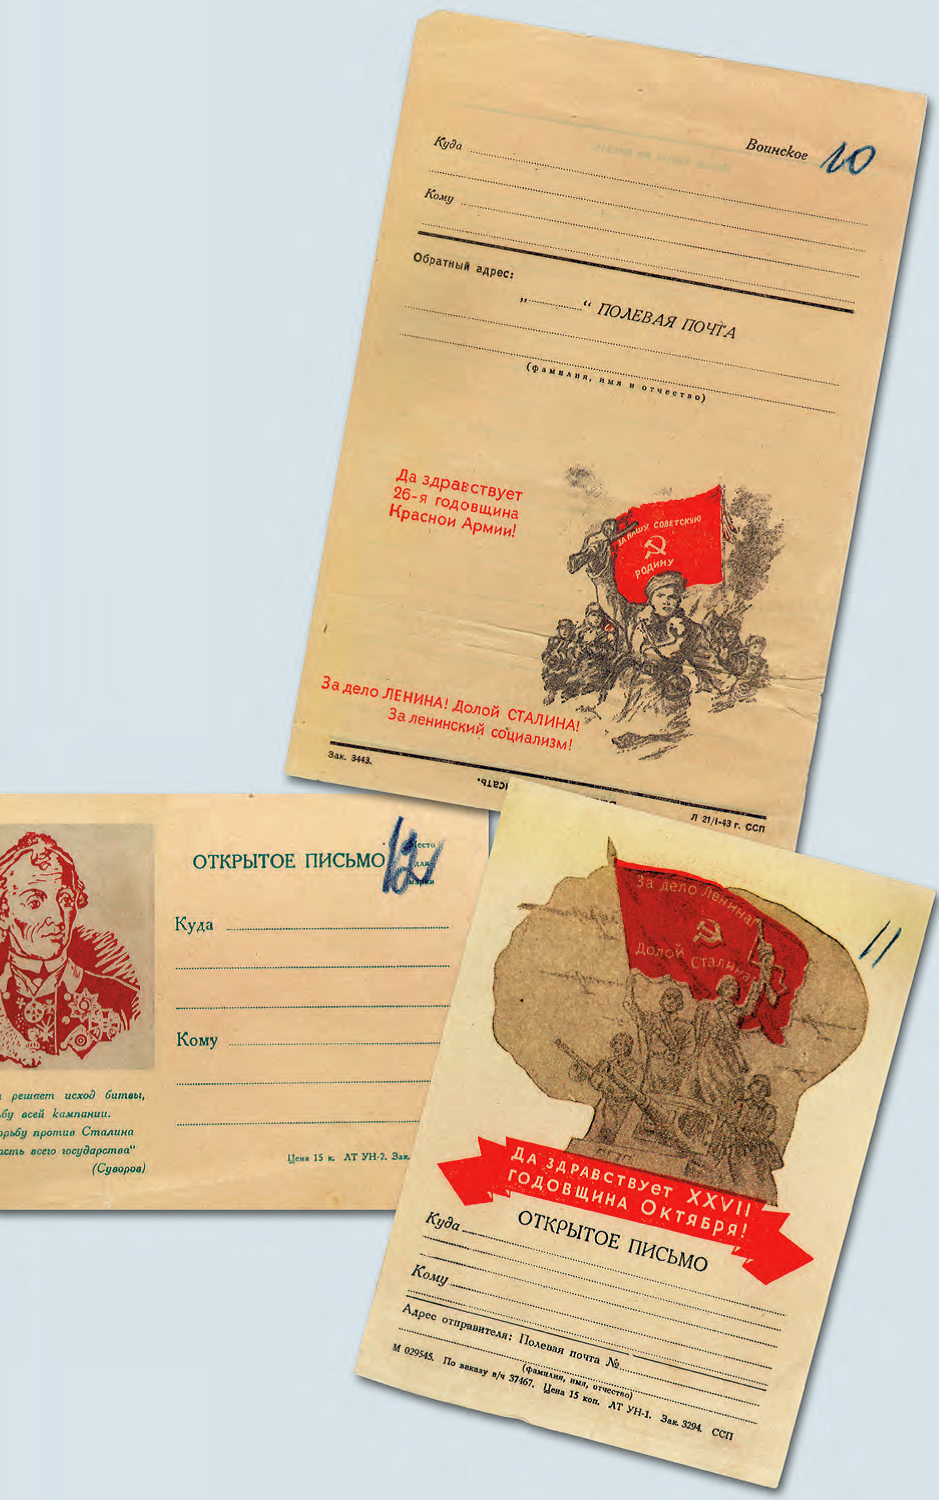 Антисоветские агитационные материалы, изъятые у диверсантов